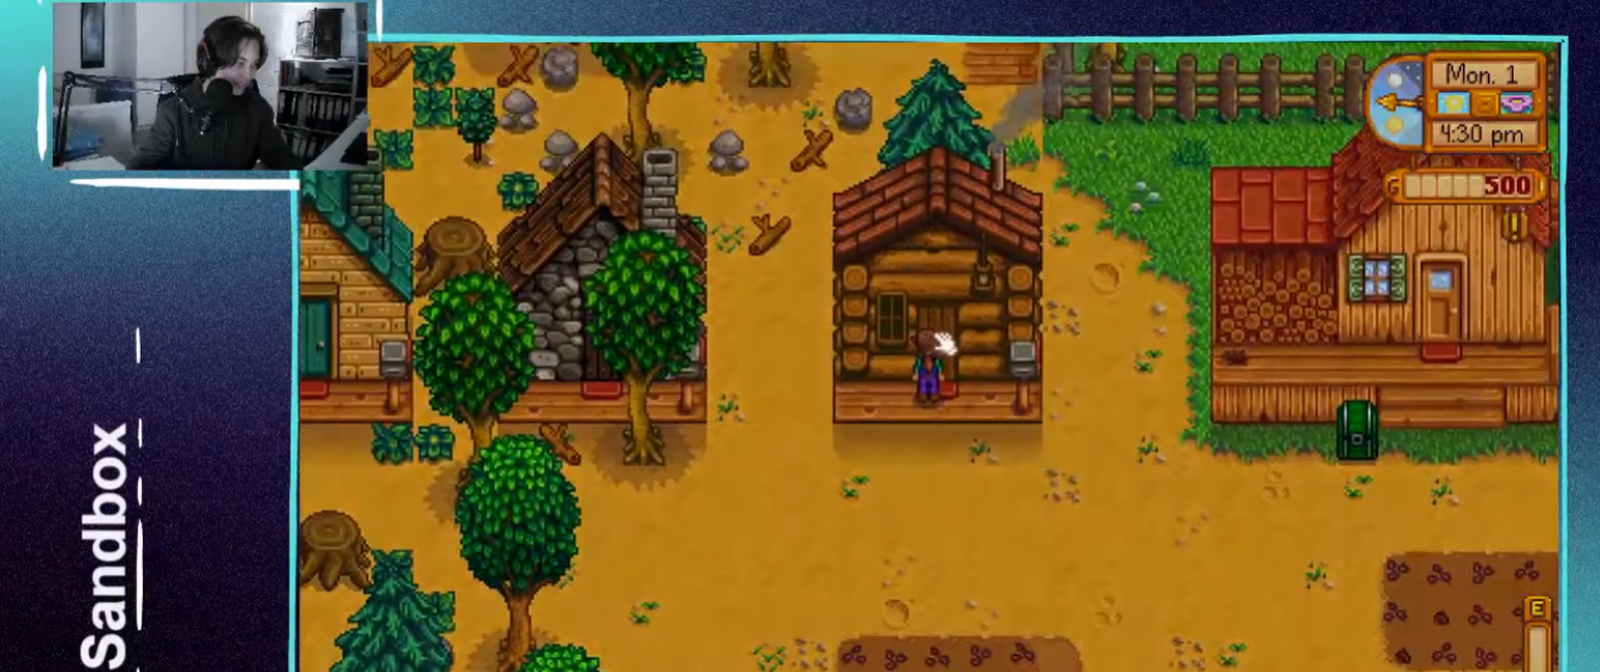 Ein Bildschirm mit einer Szene aus einem Computerspiel mit altmodischer Grafik. Eine Figur steht darin vor einem der vielen einfachen Holz- und Steinhäuser. Links oben auf dem Bildschirm ist eine Person, vermutlich der Spieler, mit Headset zu sehen. 